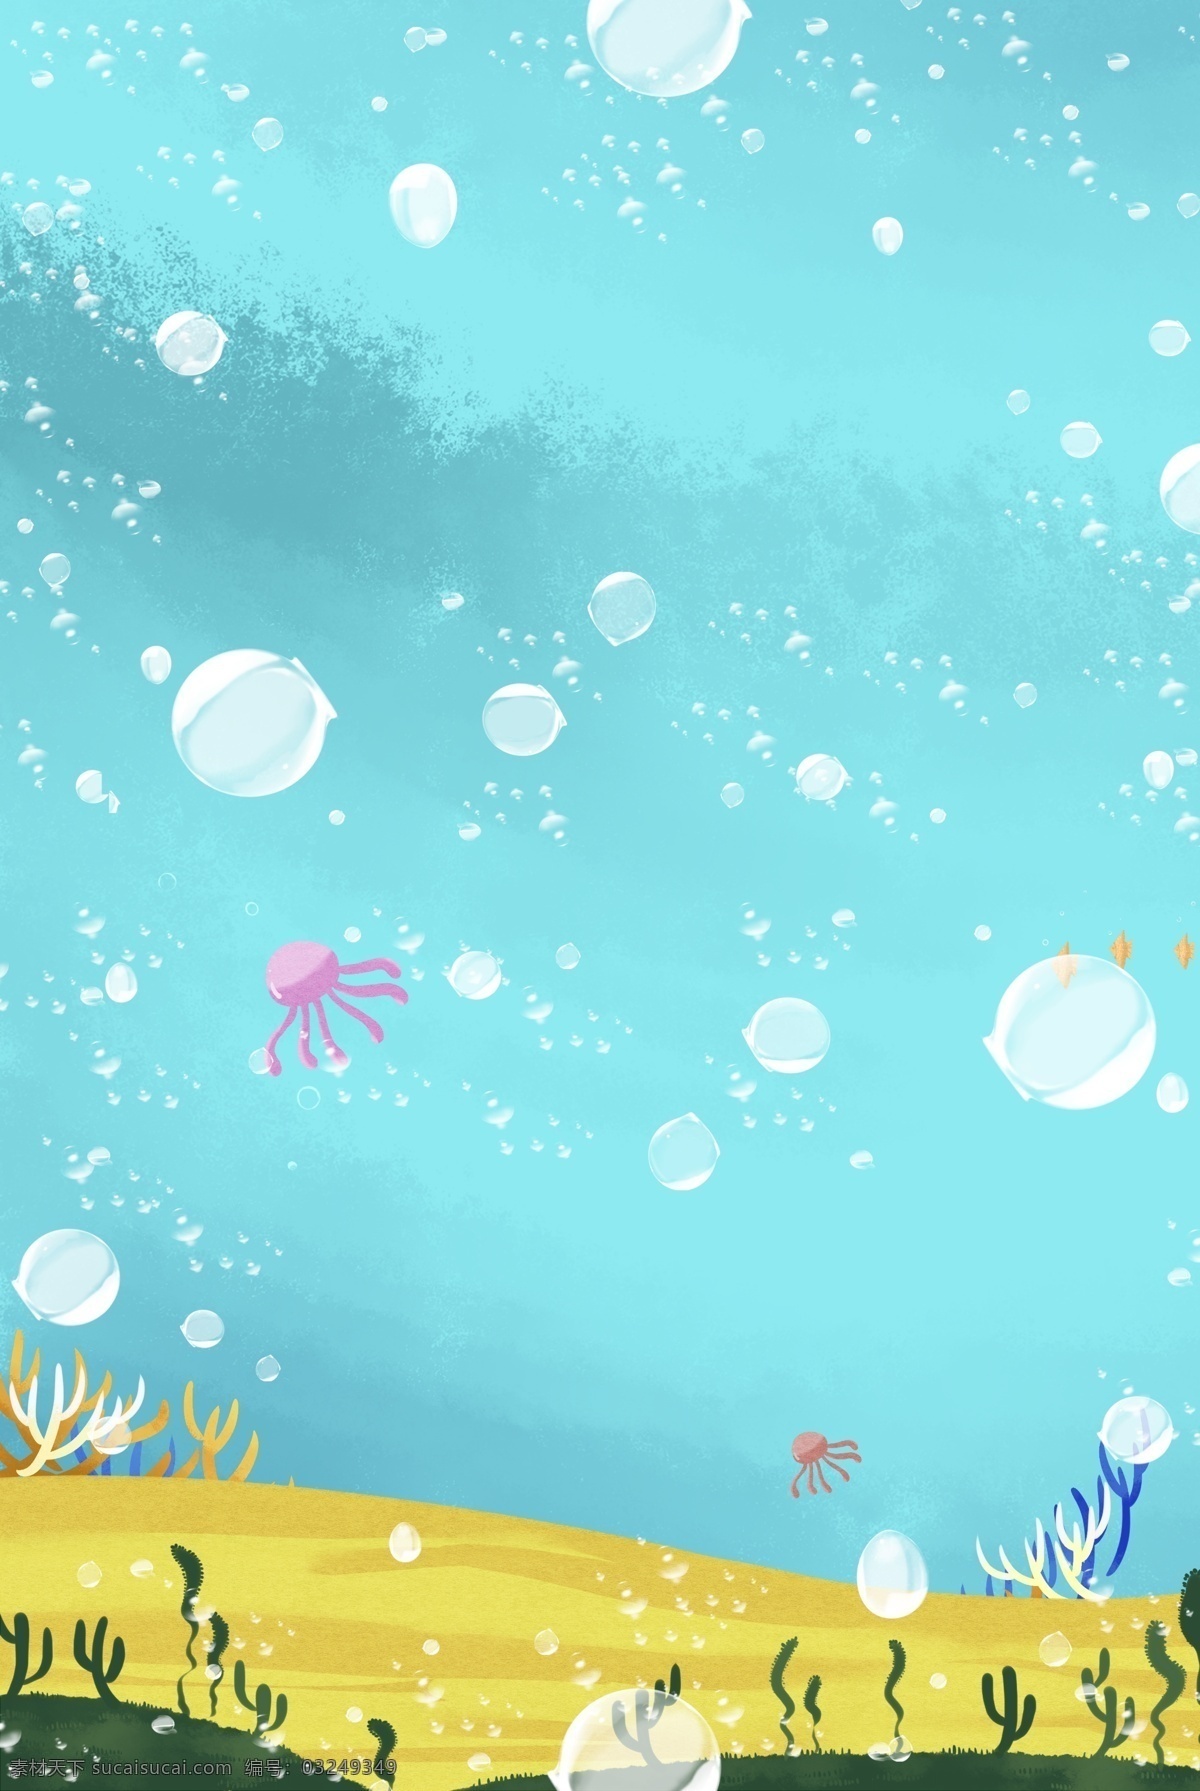 海洋世界 手绘 海底 分层 banner 蓝色 夏天 鱼 海草 气泡 珊瑚 创意合成